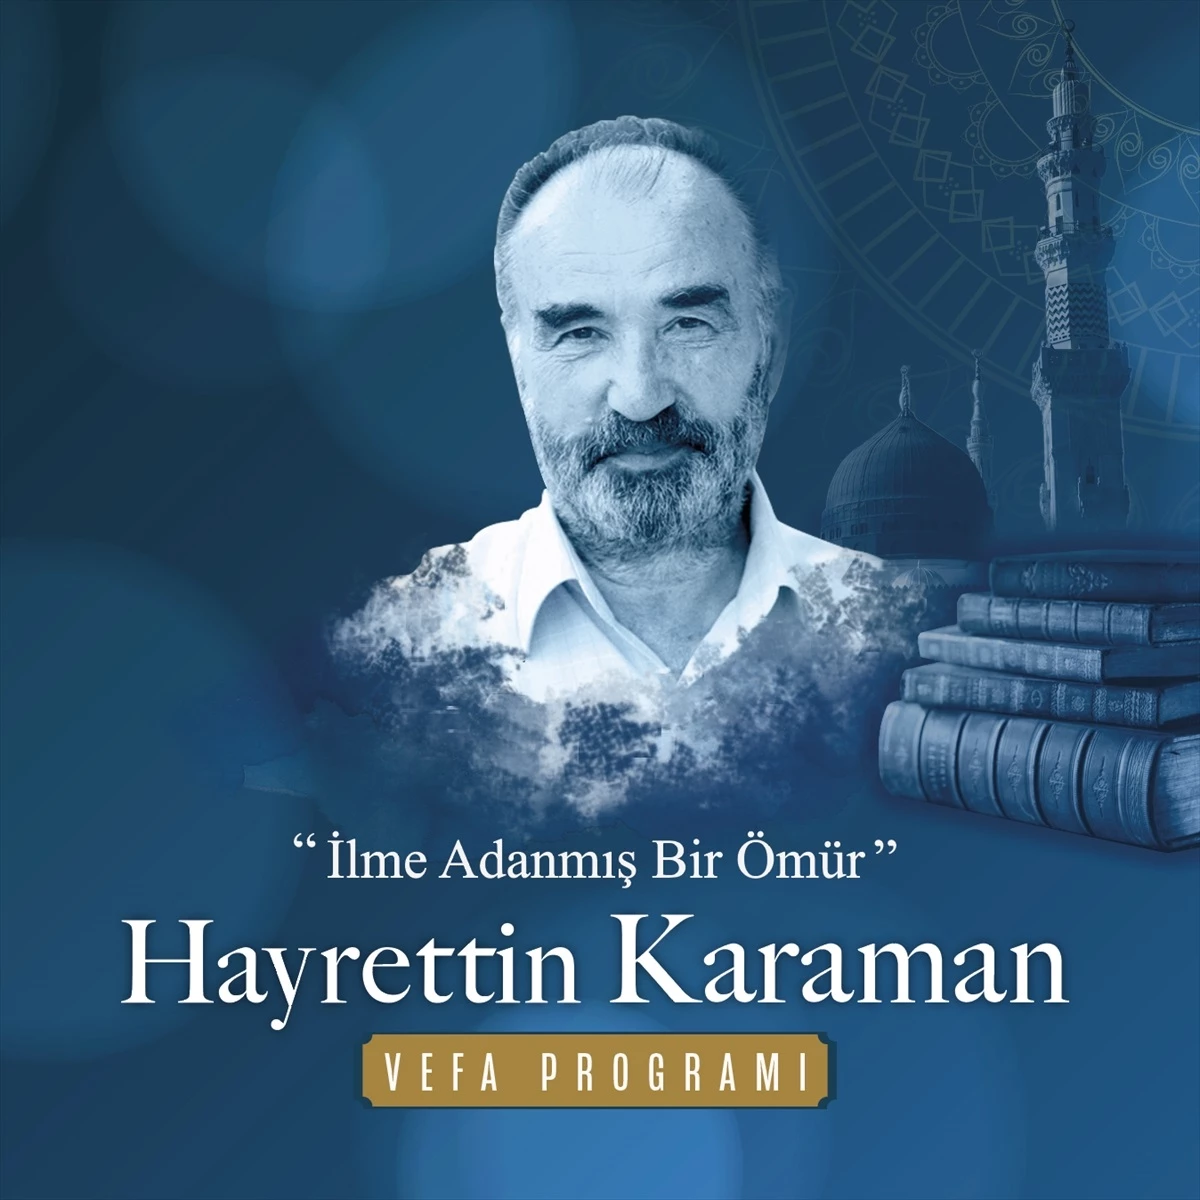 Yıldırım Belediyesi, Prof. Dr. Hayrettin Karaman için vefa programı düzenliyor